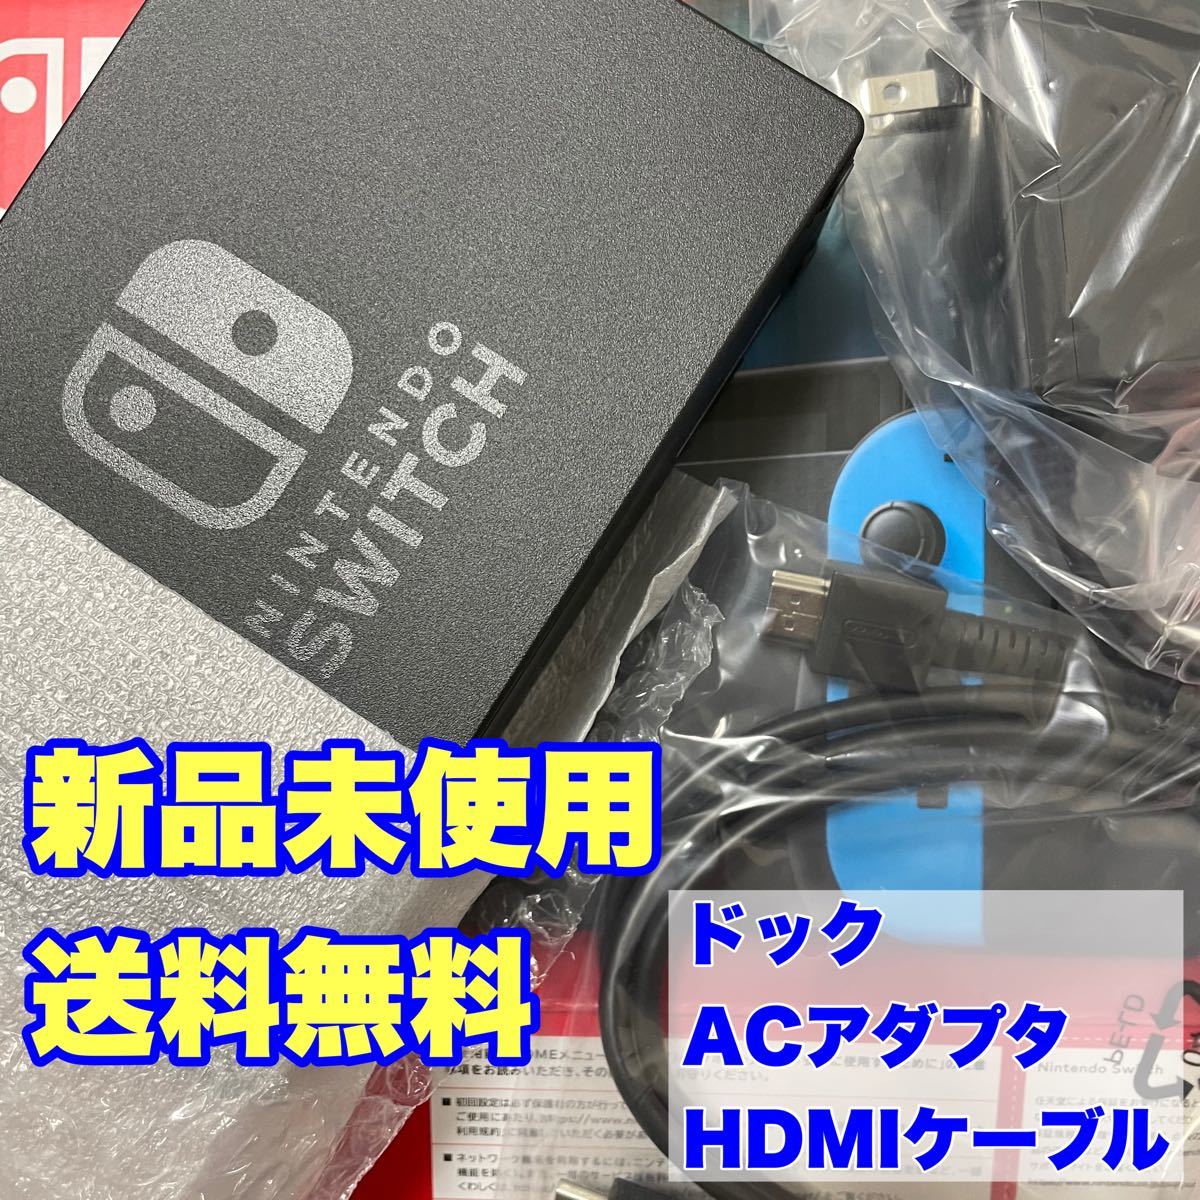 純正 新品 Nintendo Switch ドック セット HDMIケーブル ACアダプタ ニンテンドー スイッチ 任天堂 付属品